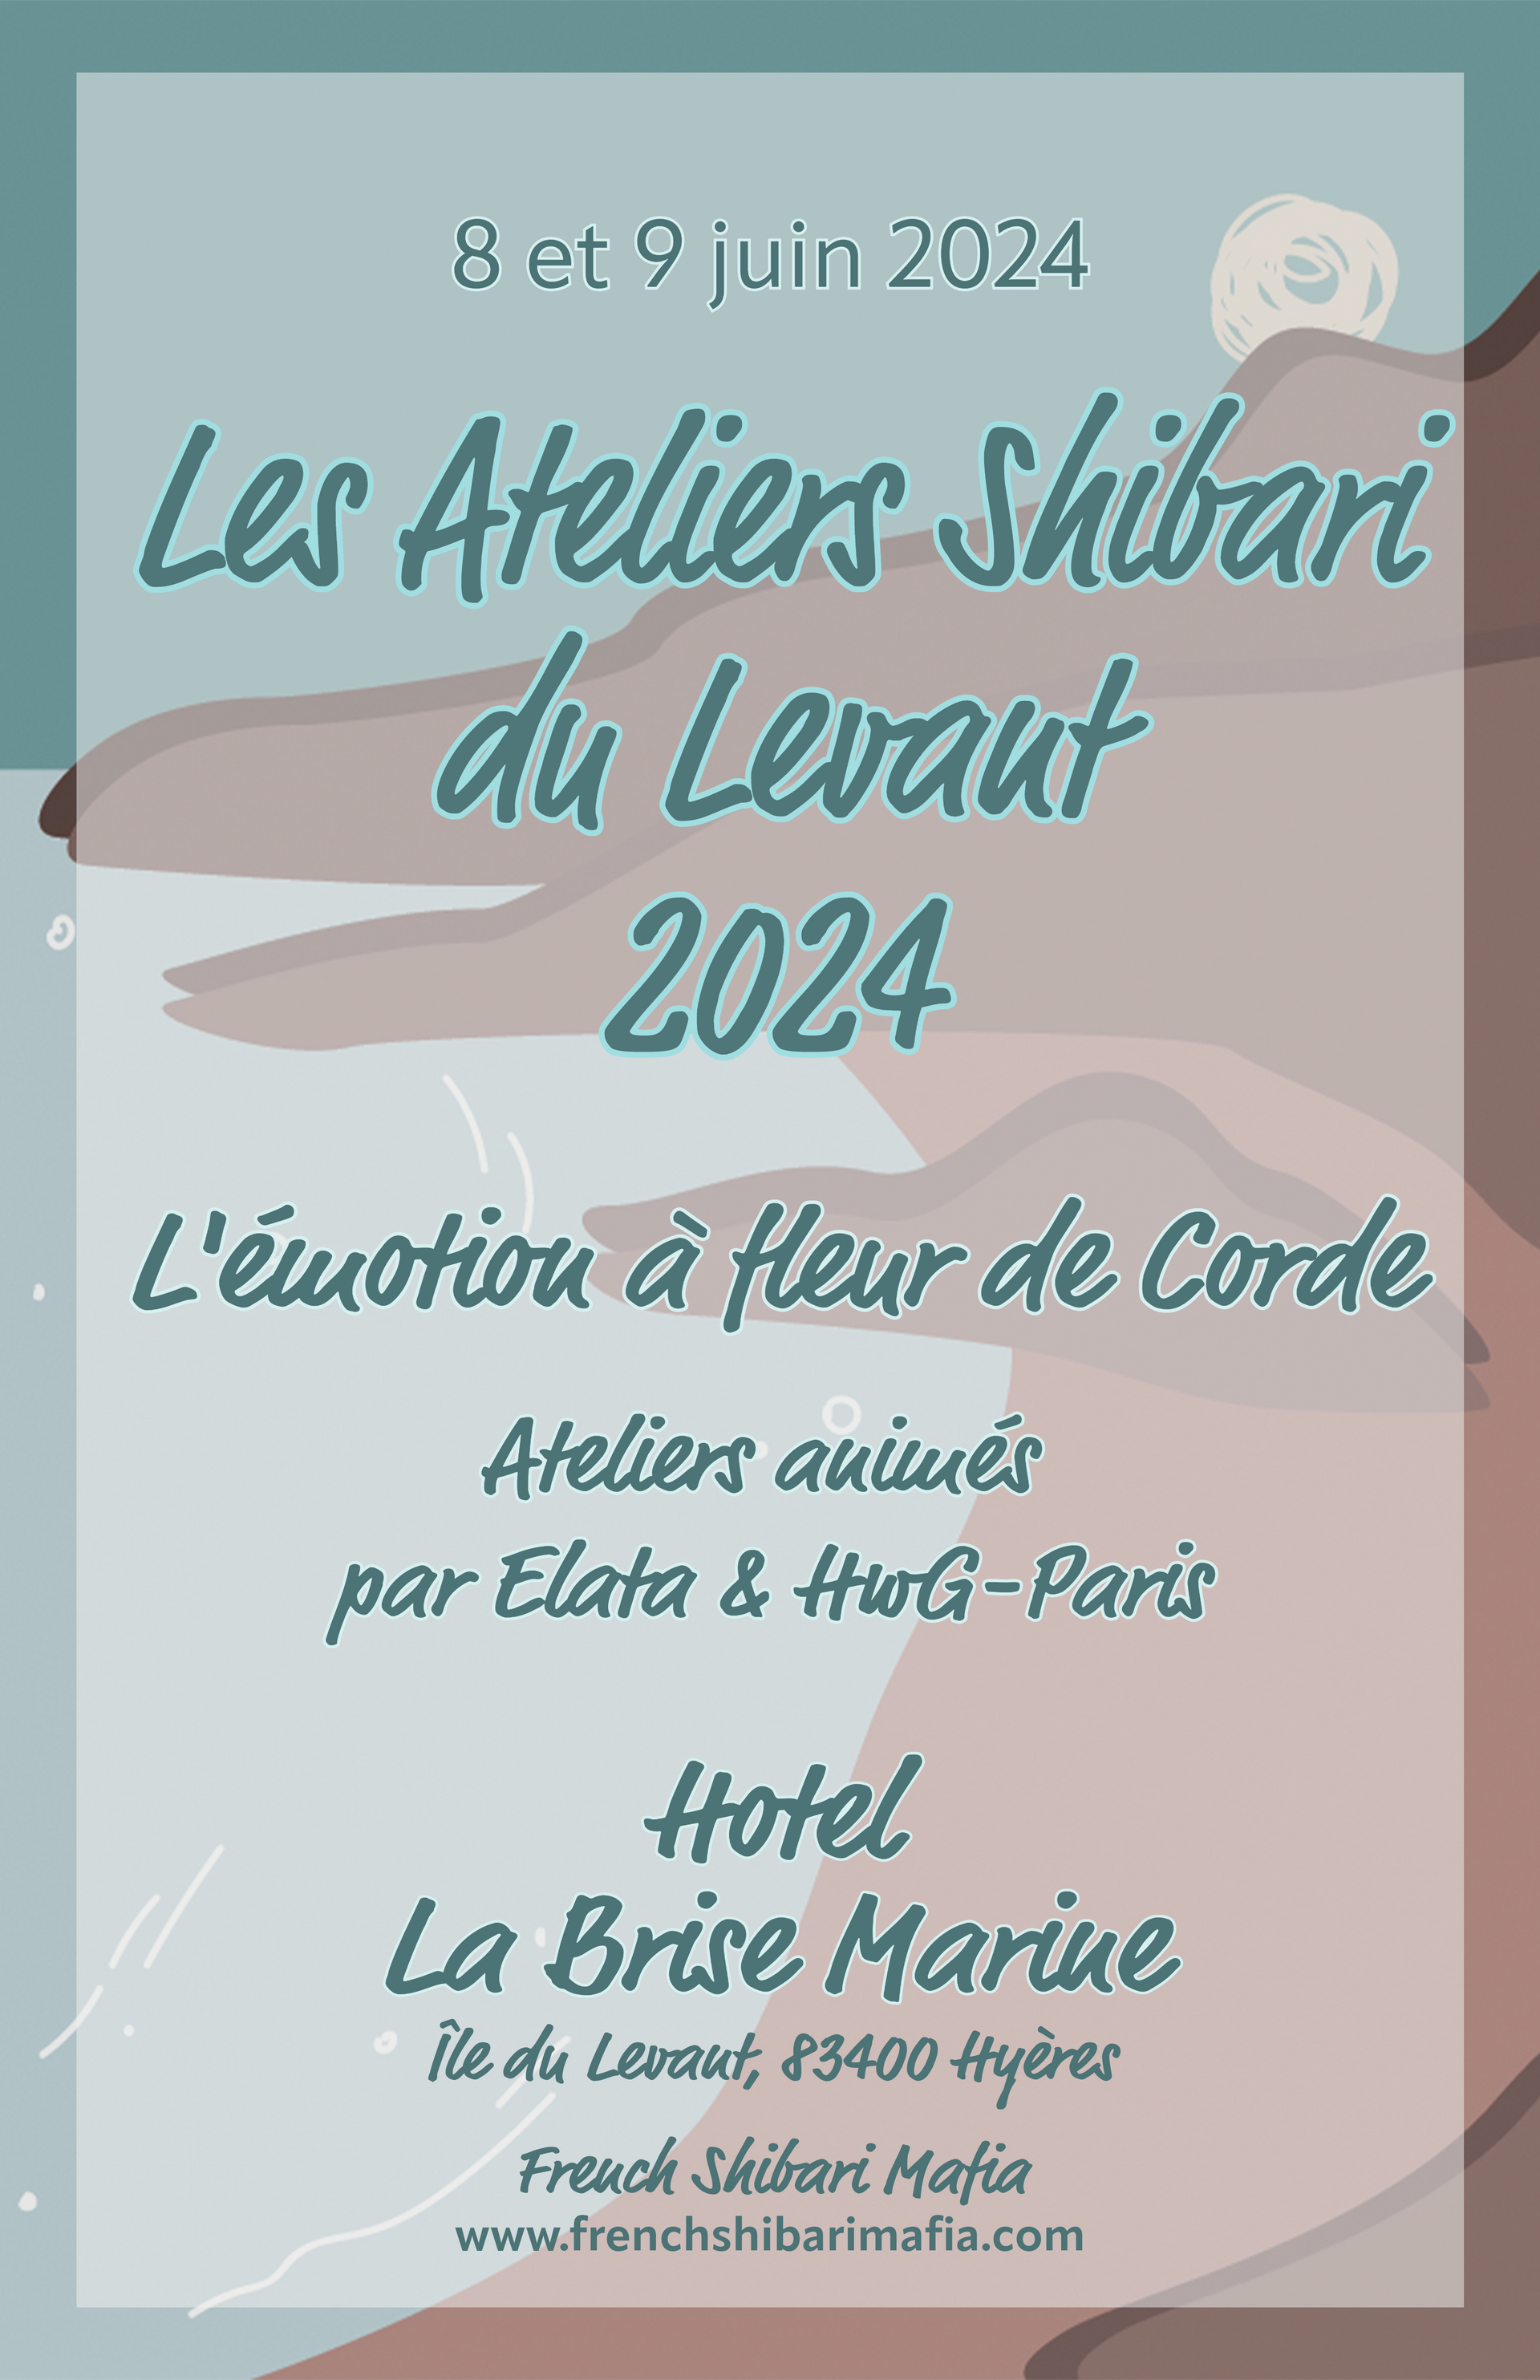 Les ateliers shbari du levant 8 et 9 juin 2024 avec HwG-Paris